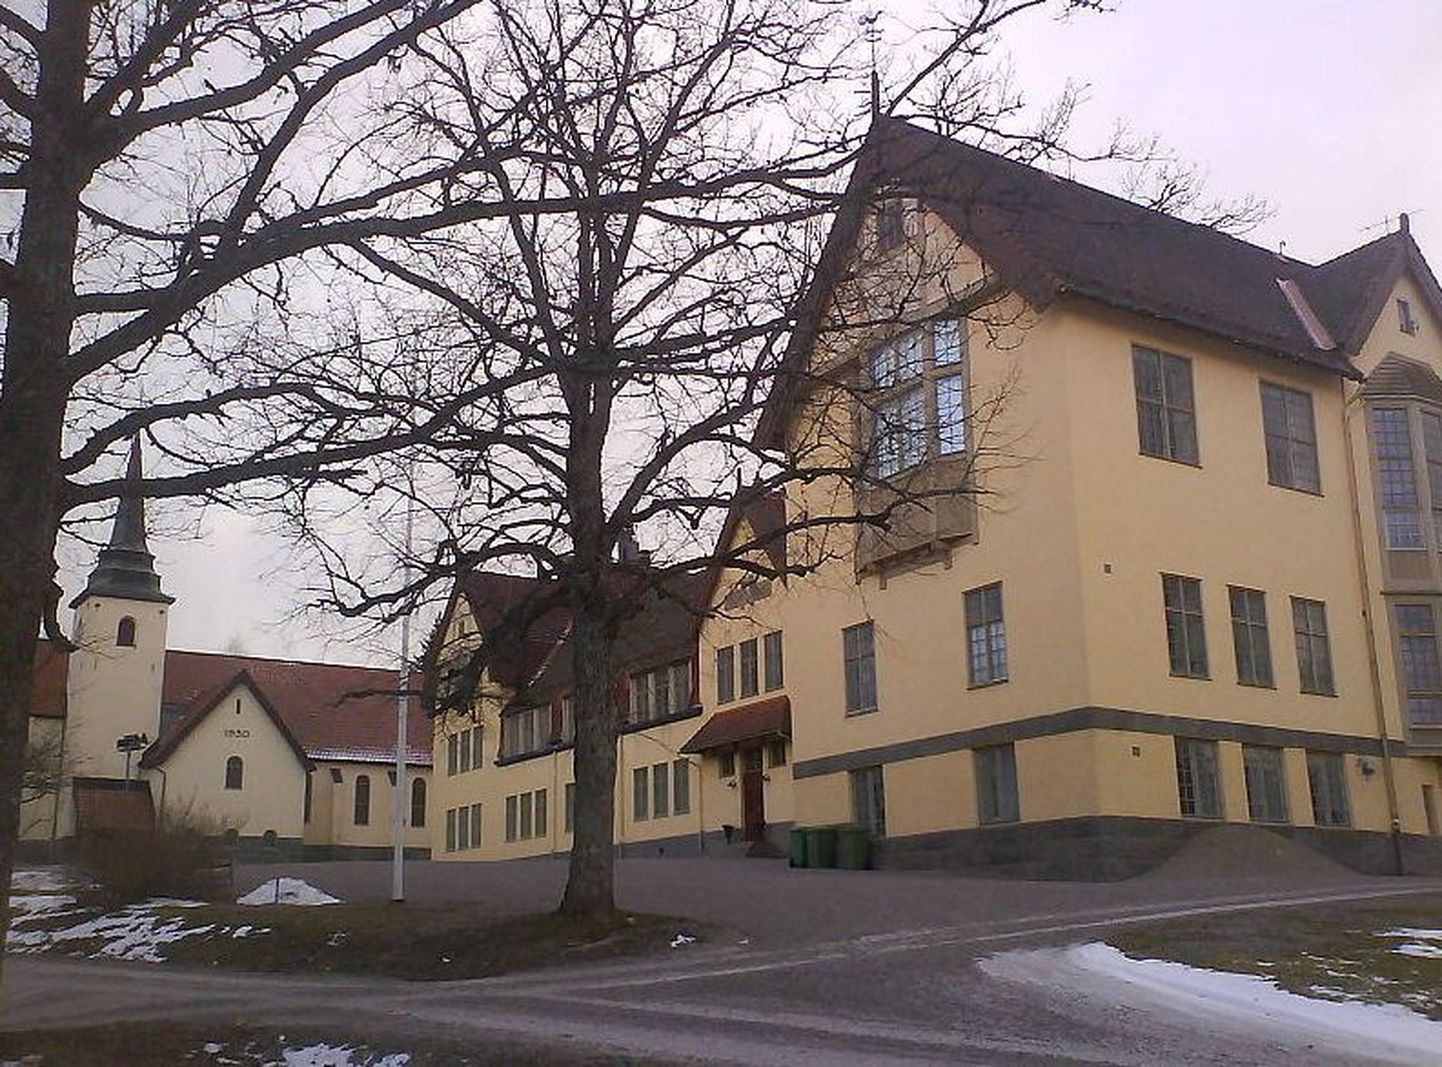 Lundsbergs skola hooned